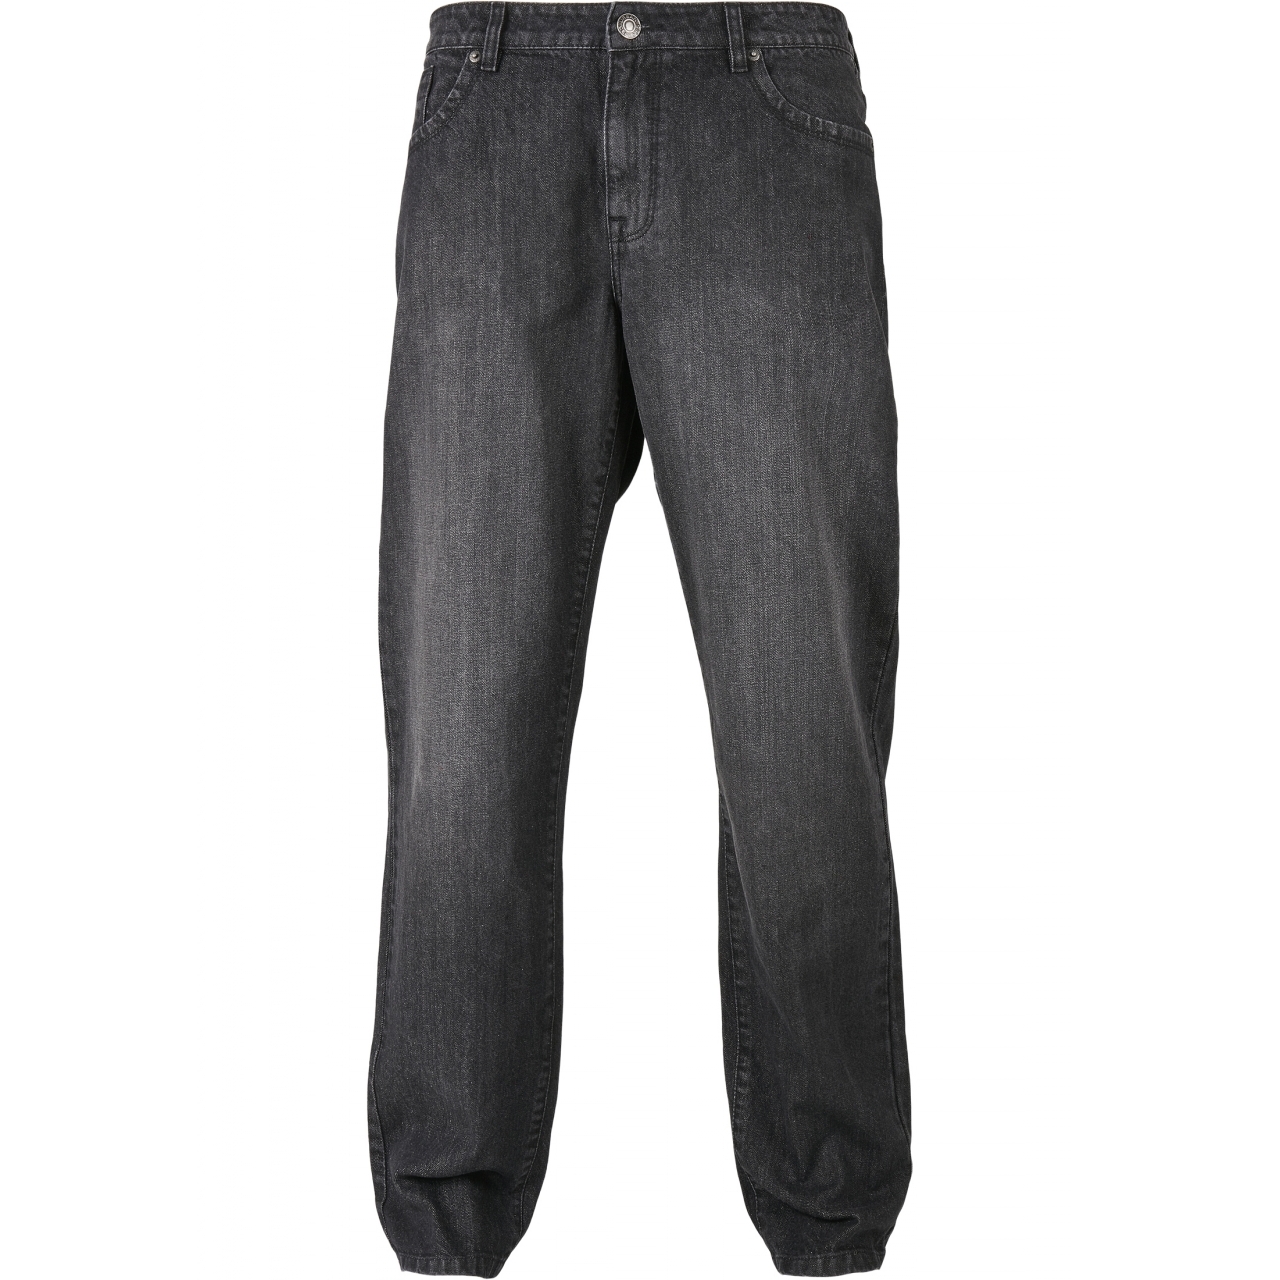 Džíny Urban Classics Loose Fit Jeans - černé, 31/32